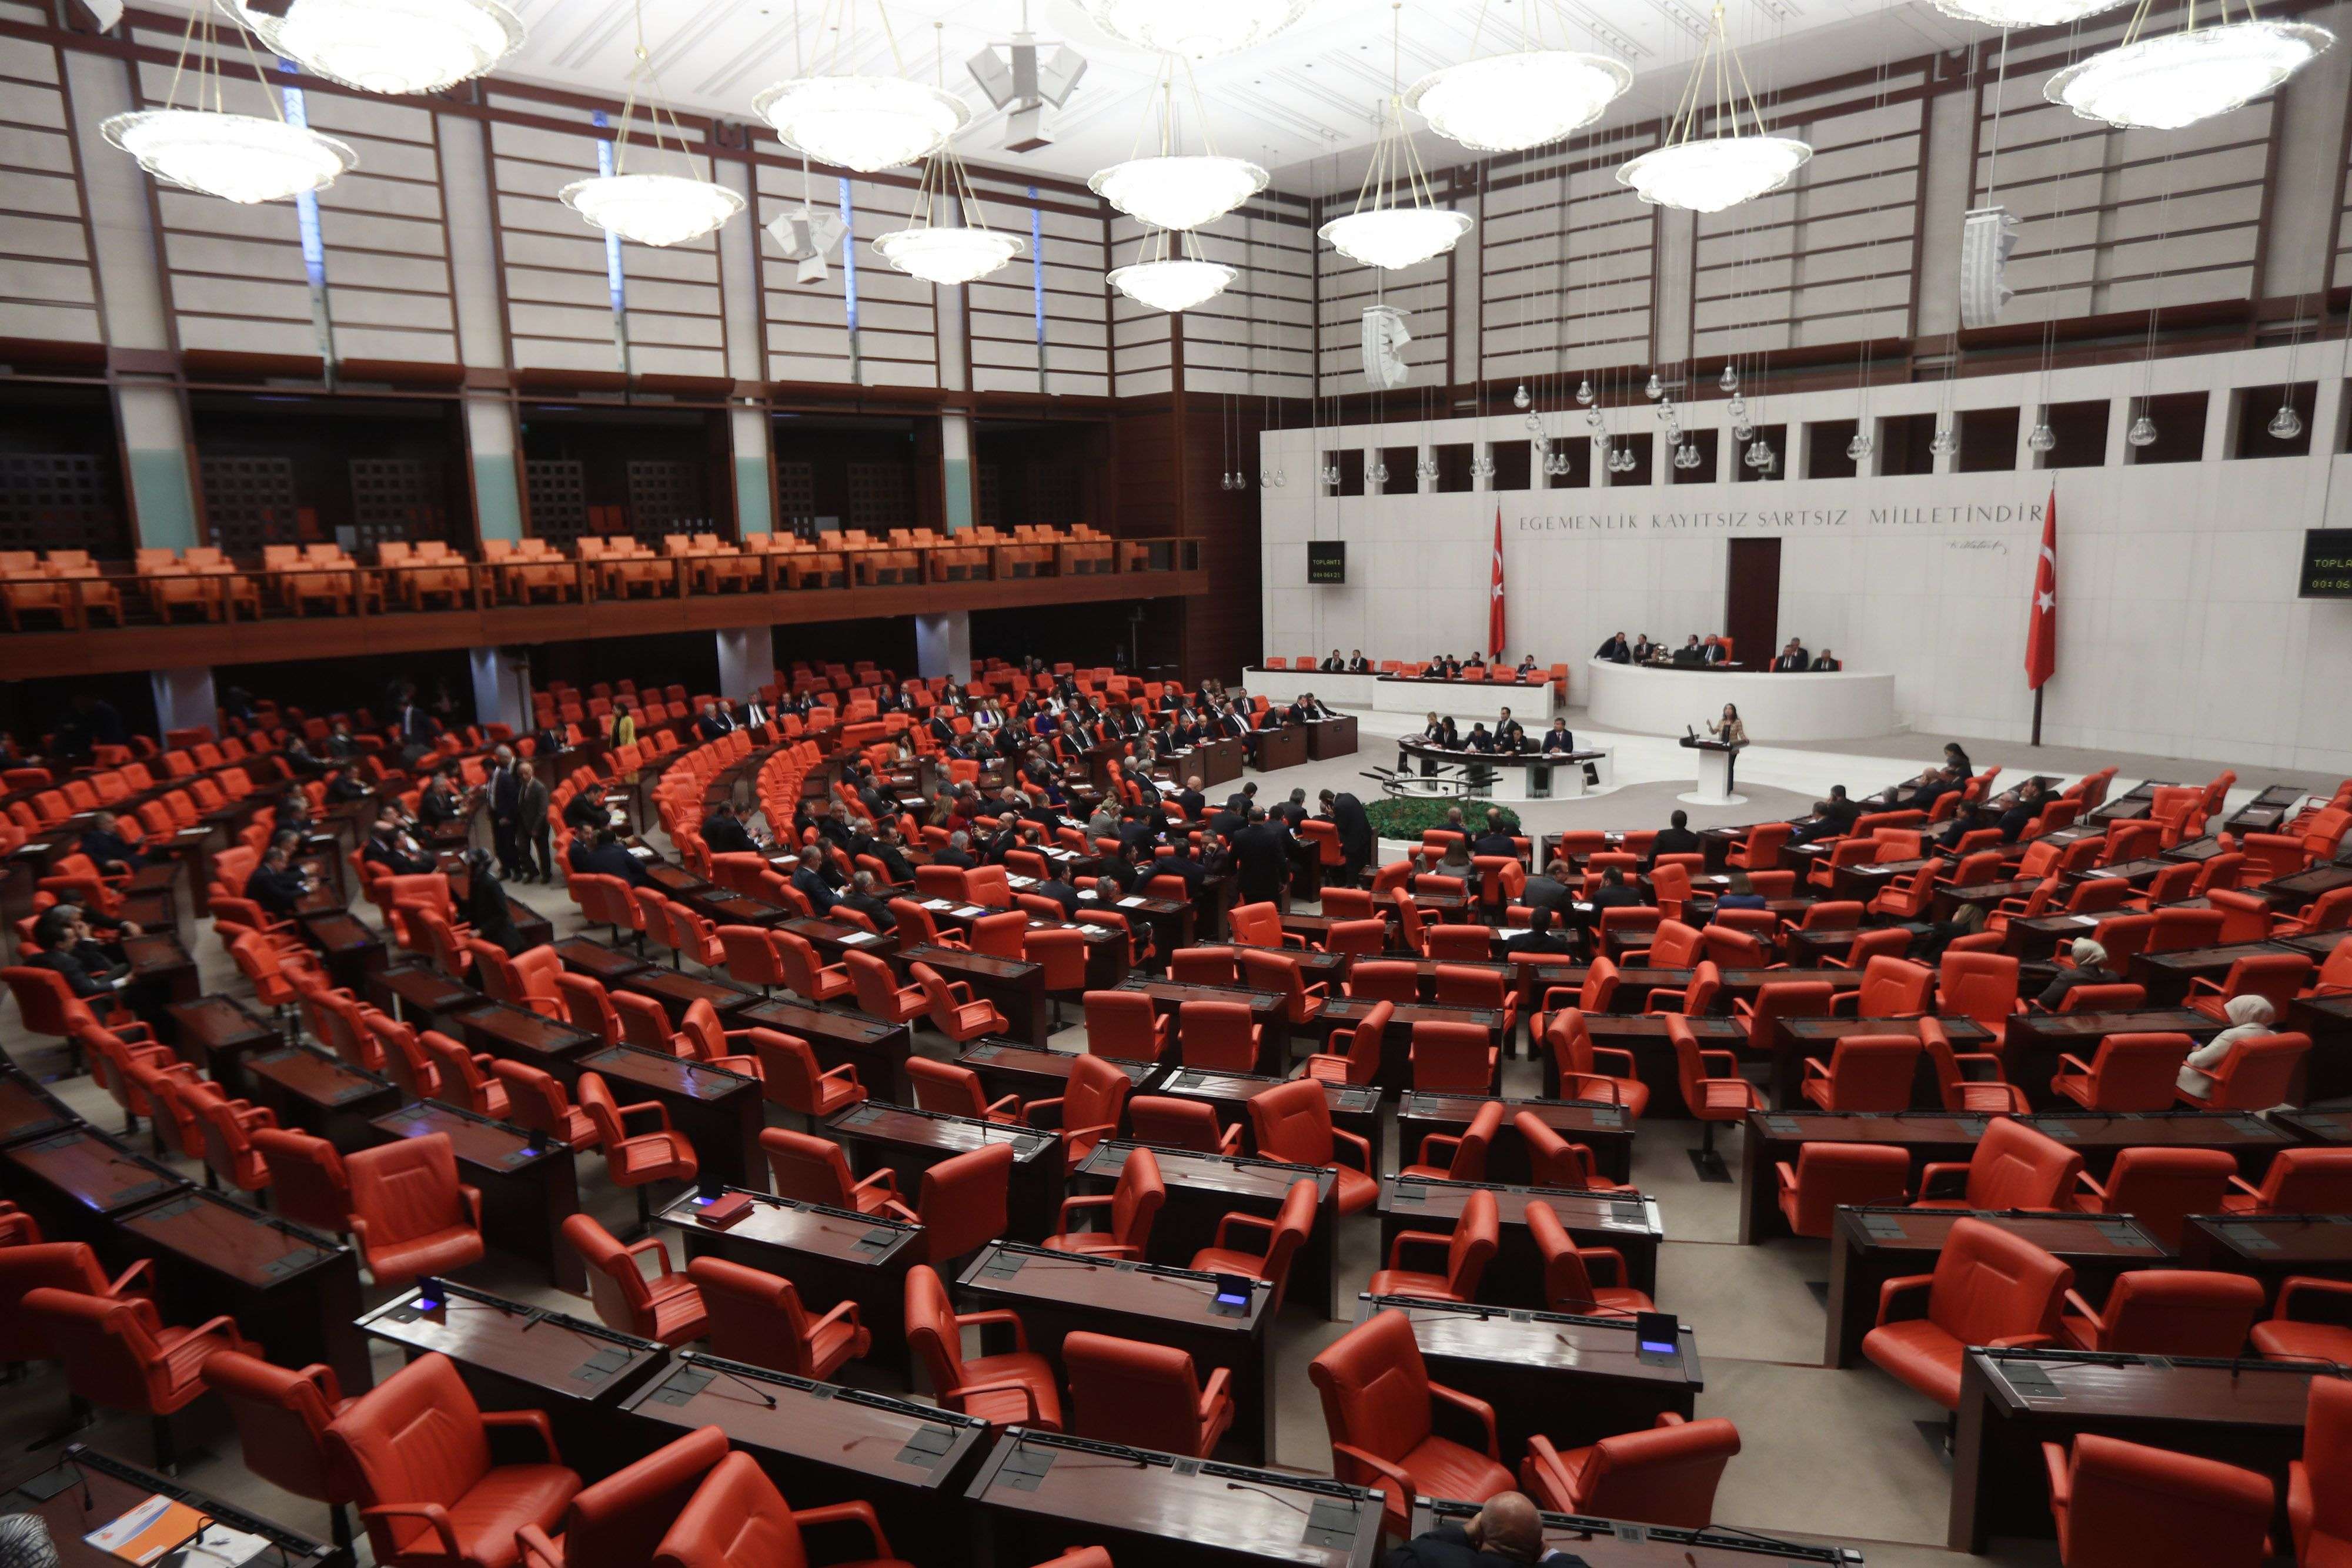 البرلمان التركي يشرع لنتهاك القانون الدولي بالتدخل عسركيا في ليبيا